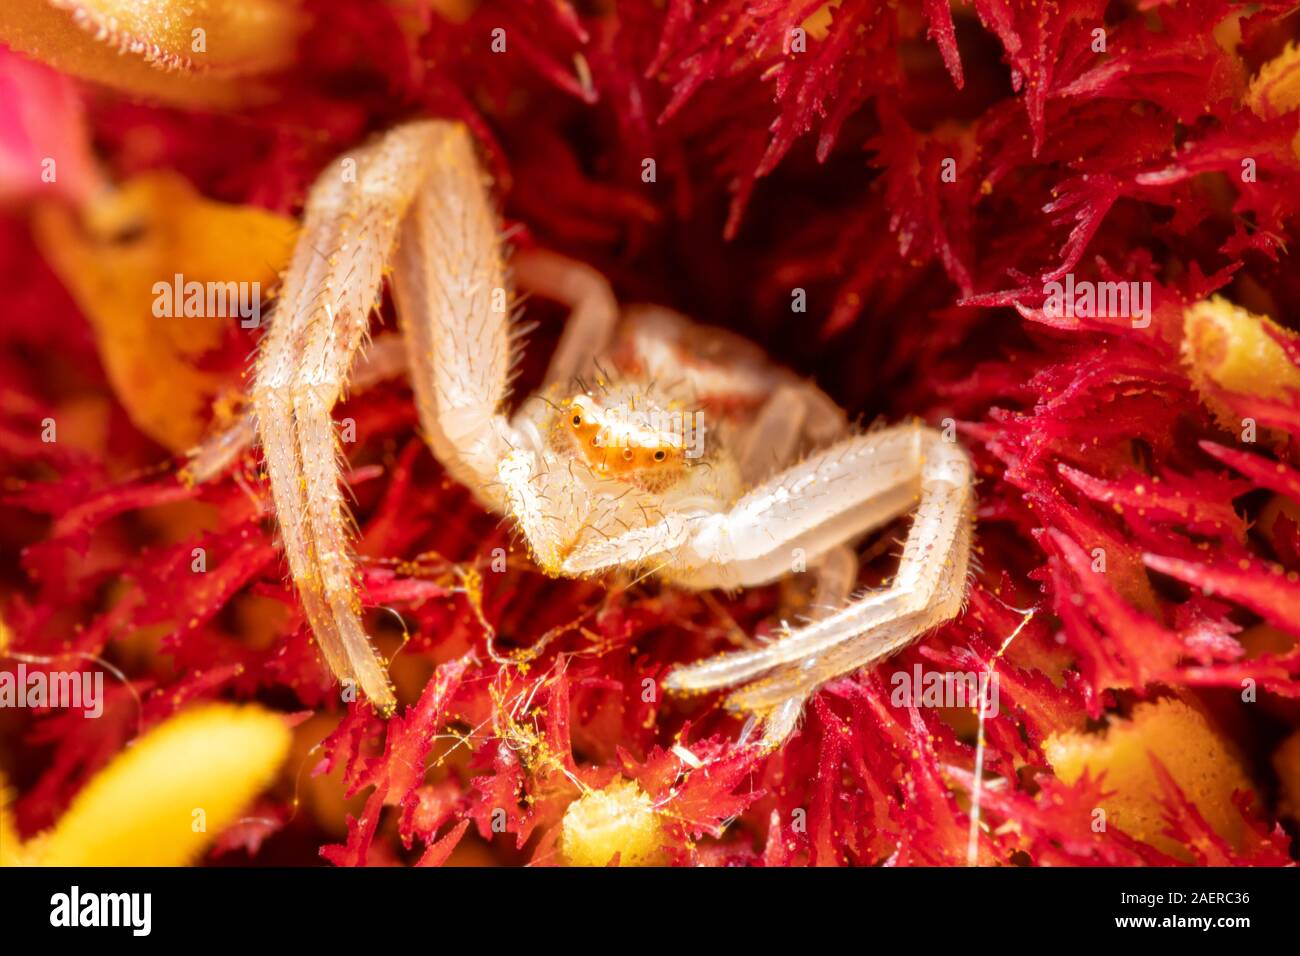 Mecaphesa spp. Araignée crabe se cachant dans le centre d'une fleur Zinnia, attente de proie Banque D'Images